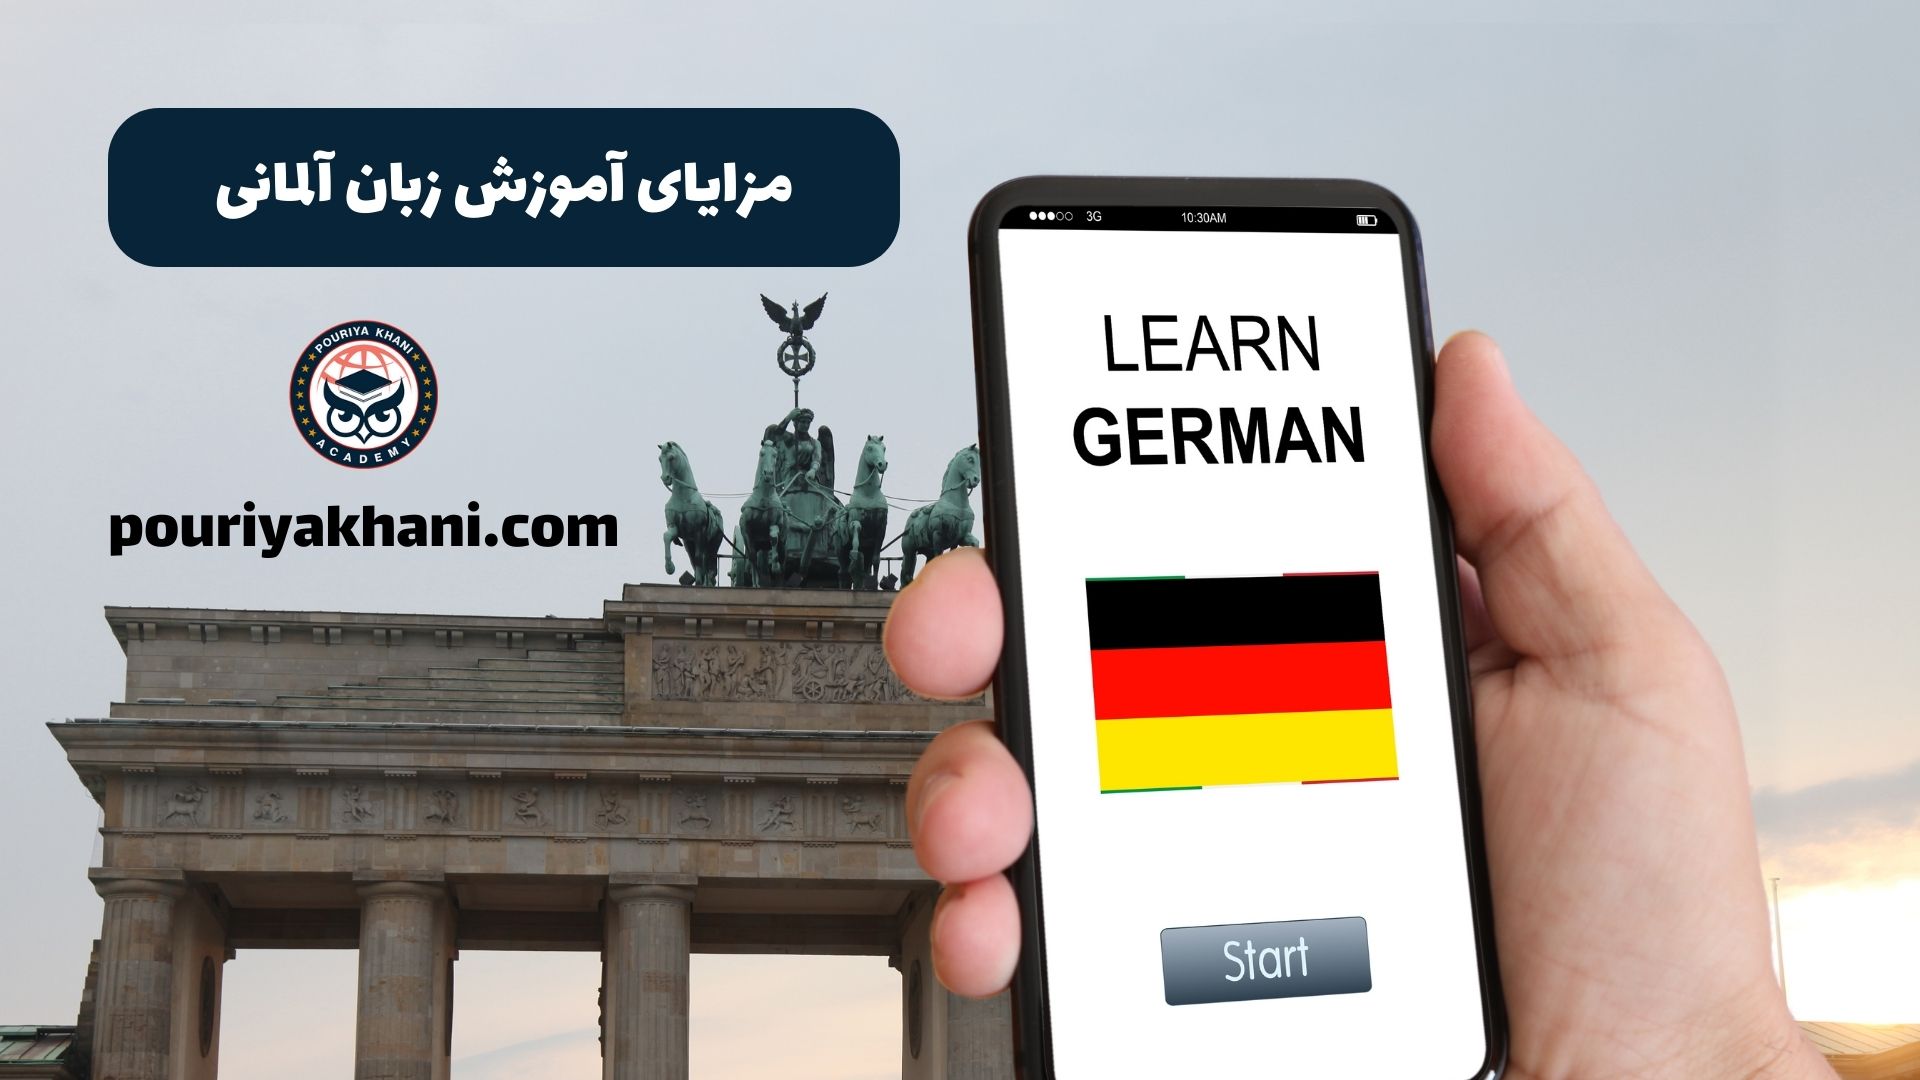 مزایای آموزش زبان آلمانی